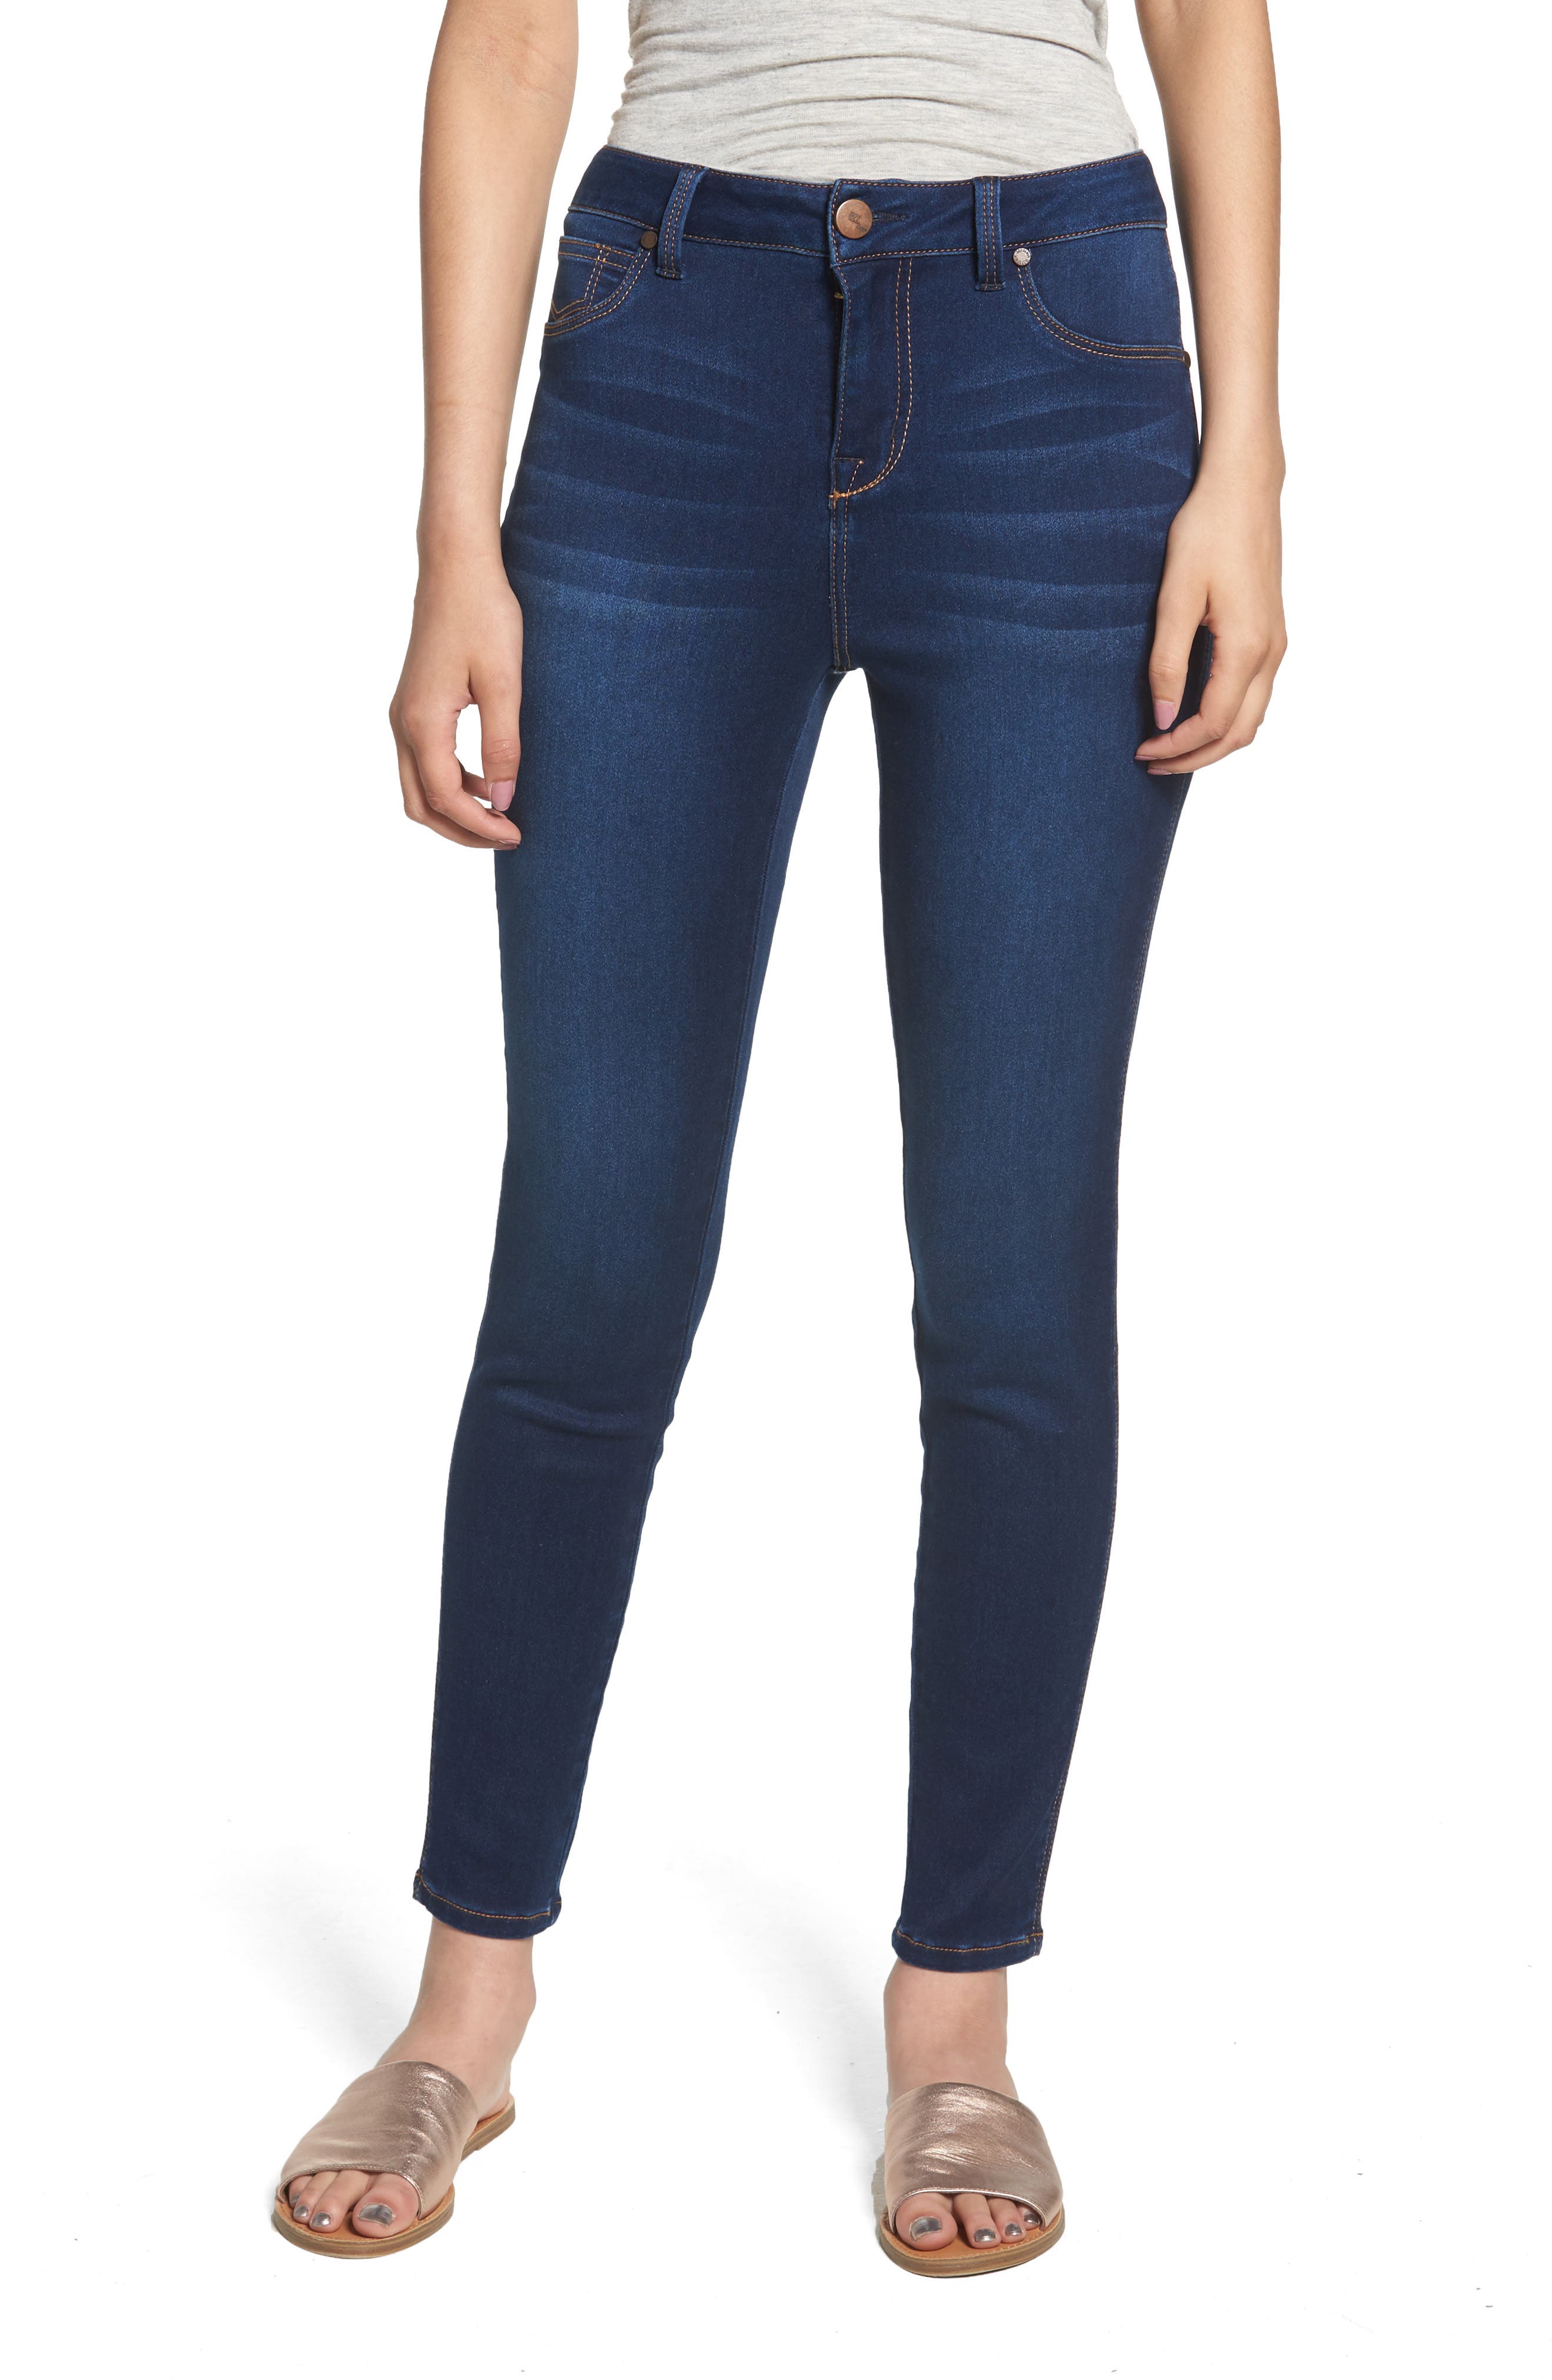 Women's 1822 Denim Jeans